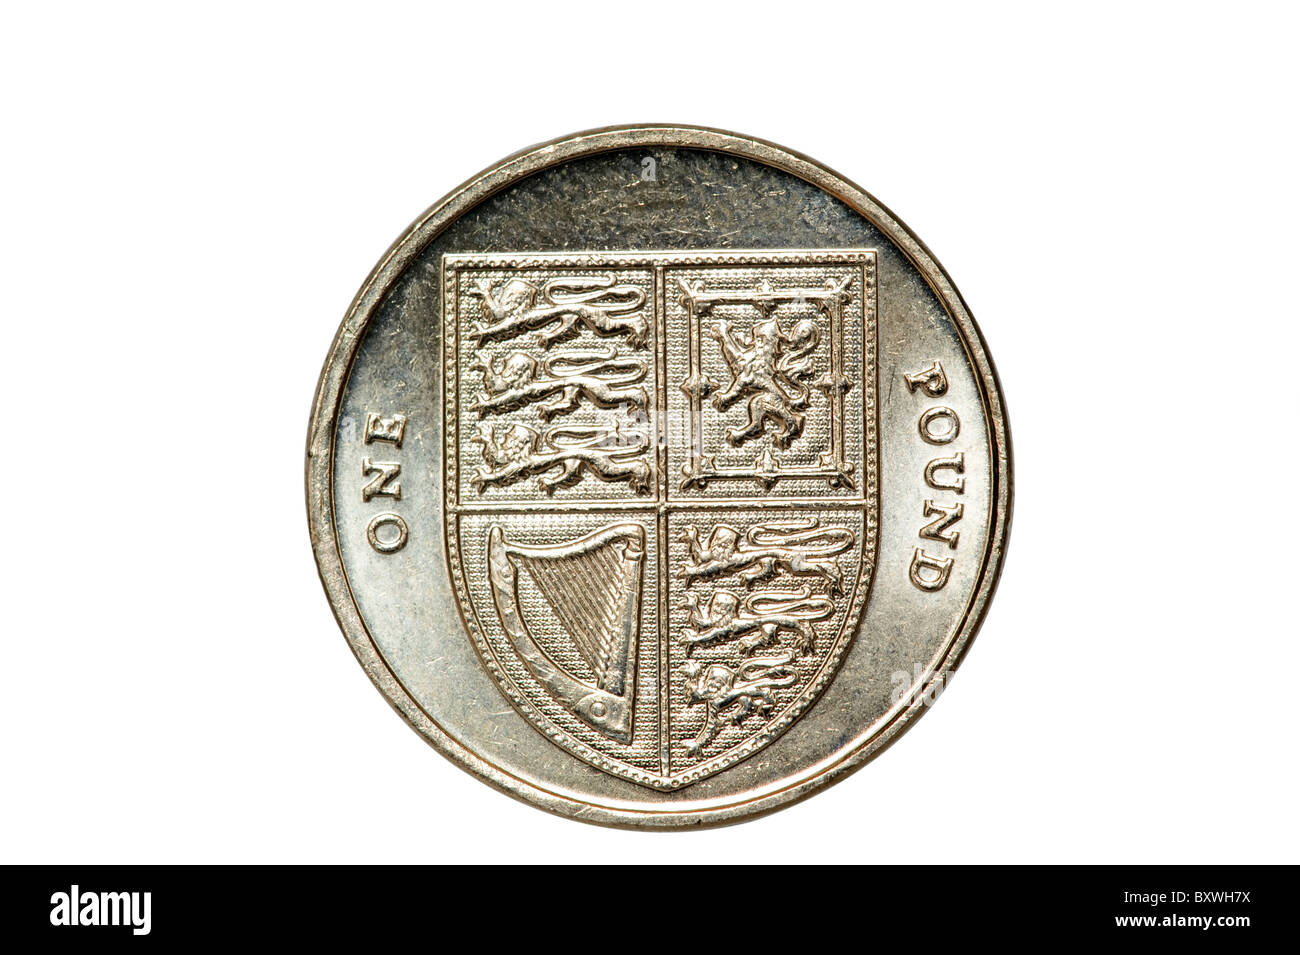 Nahaufnahme einer 2009 britische Pfund Sterling ein Pfund-Münze.  Nur zur redaktionellen Verwendung Stockfoto